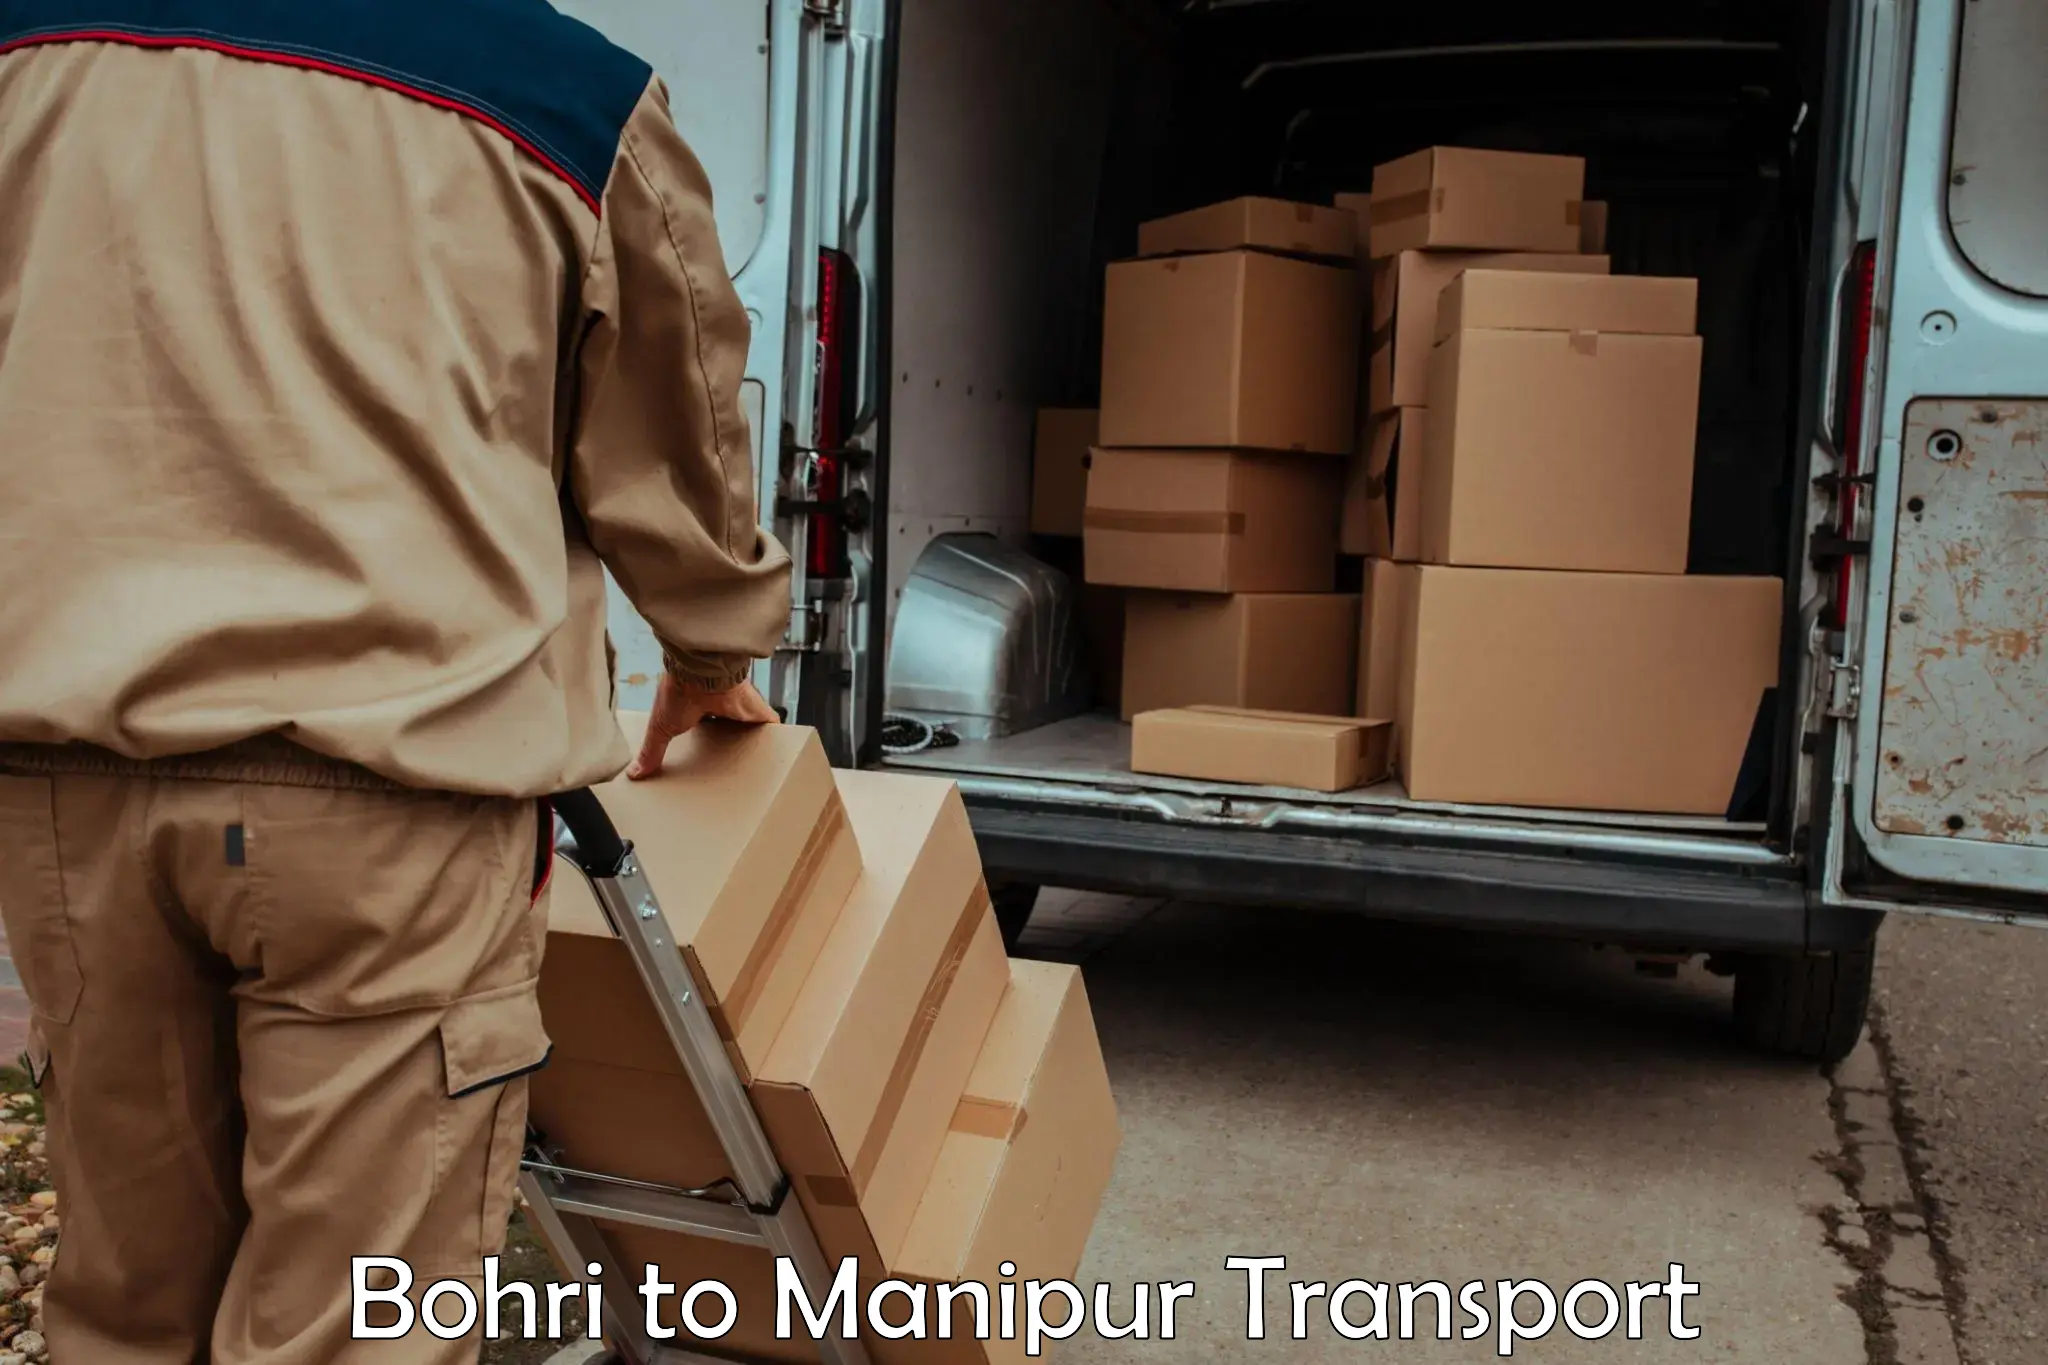 Furniture transport service Bohri to Ukhrul